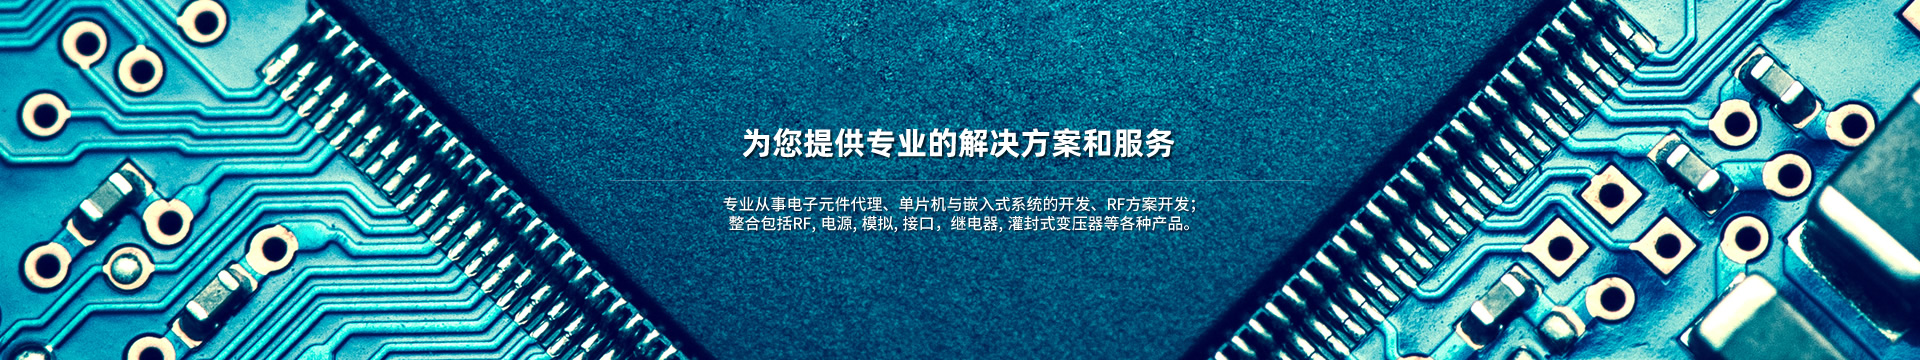 样本申请-上海杰纳电子科技有限公司-上海杰纳电子科技有限公司